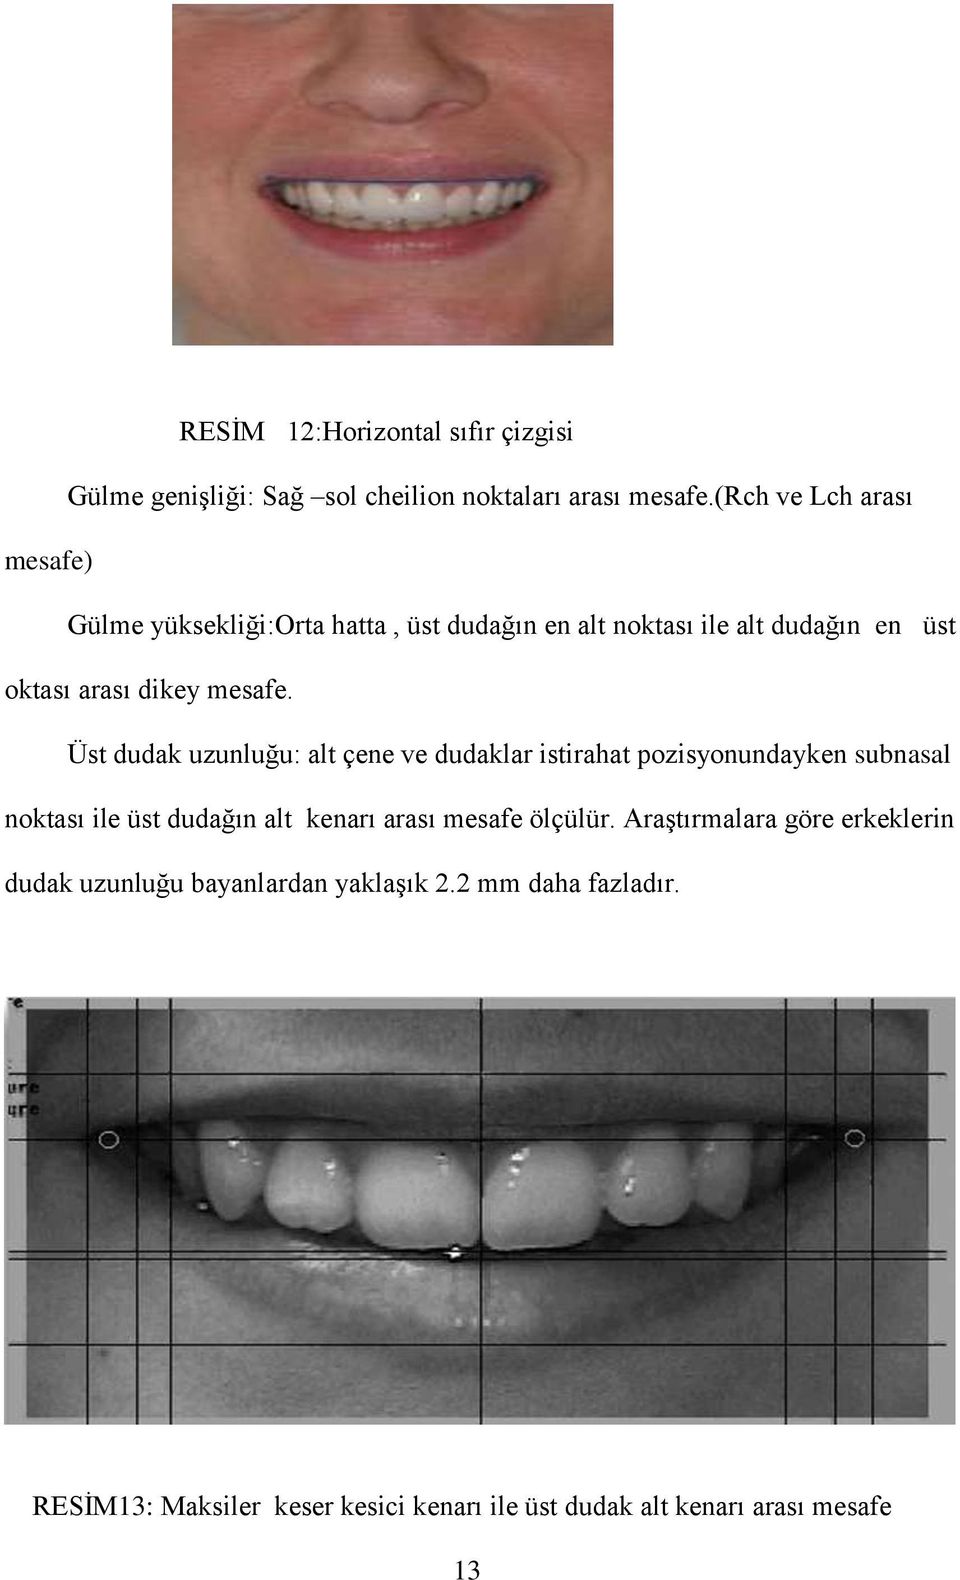 Üst dudak uzunluğu: alt çene ve dudaklar istirahat pozisyonundayken subnasal noktası ile üst dudağın alt kenarı arası mesafe